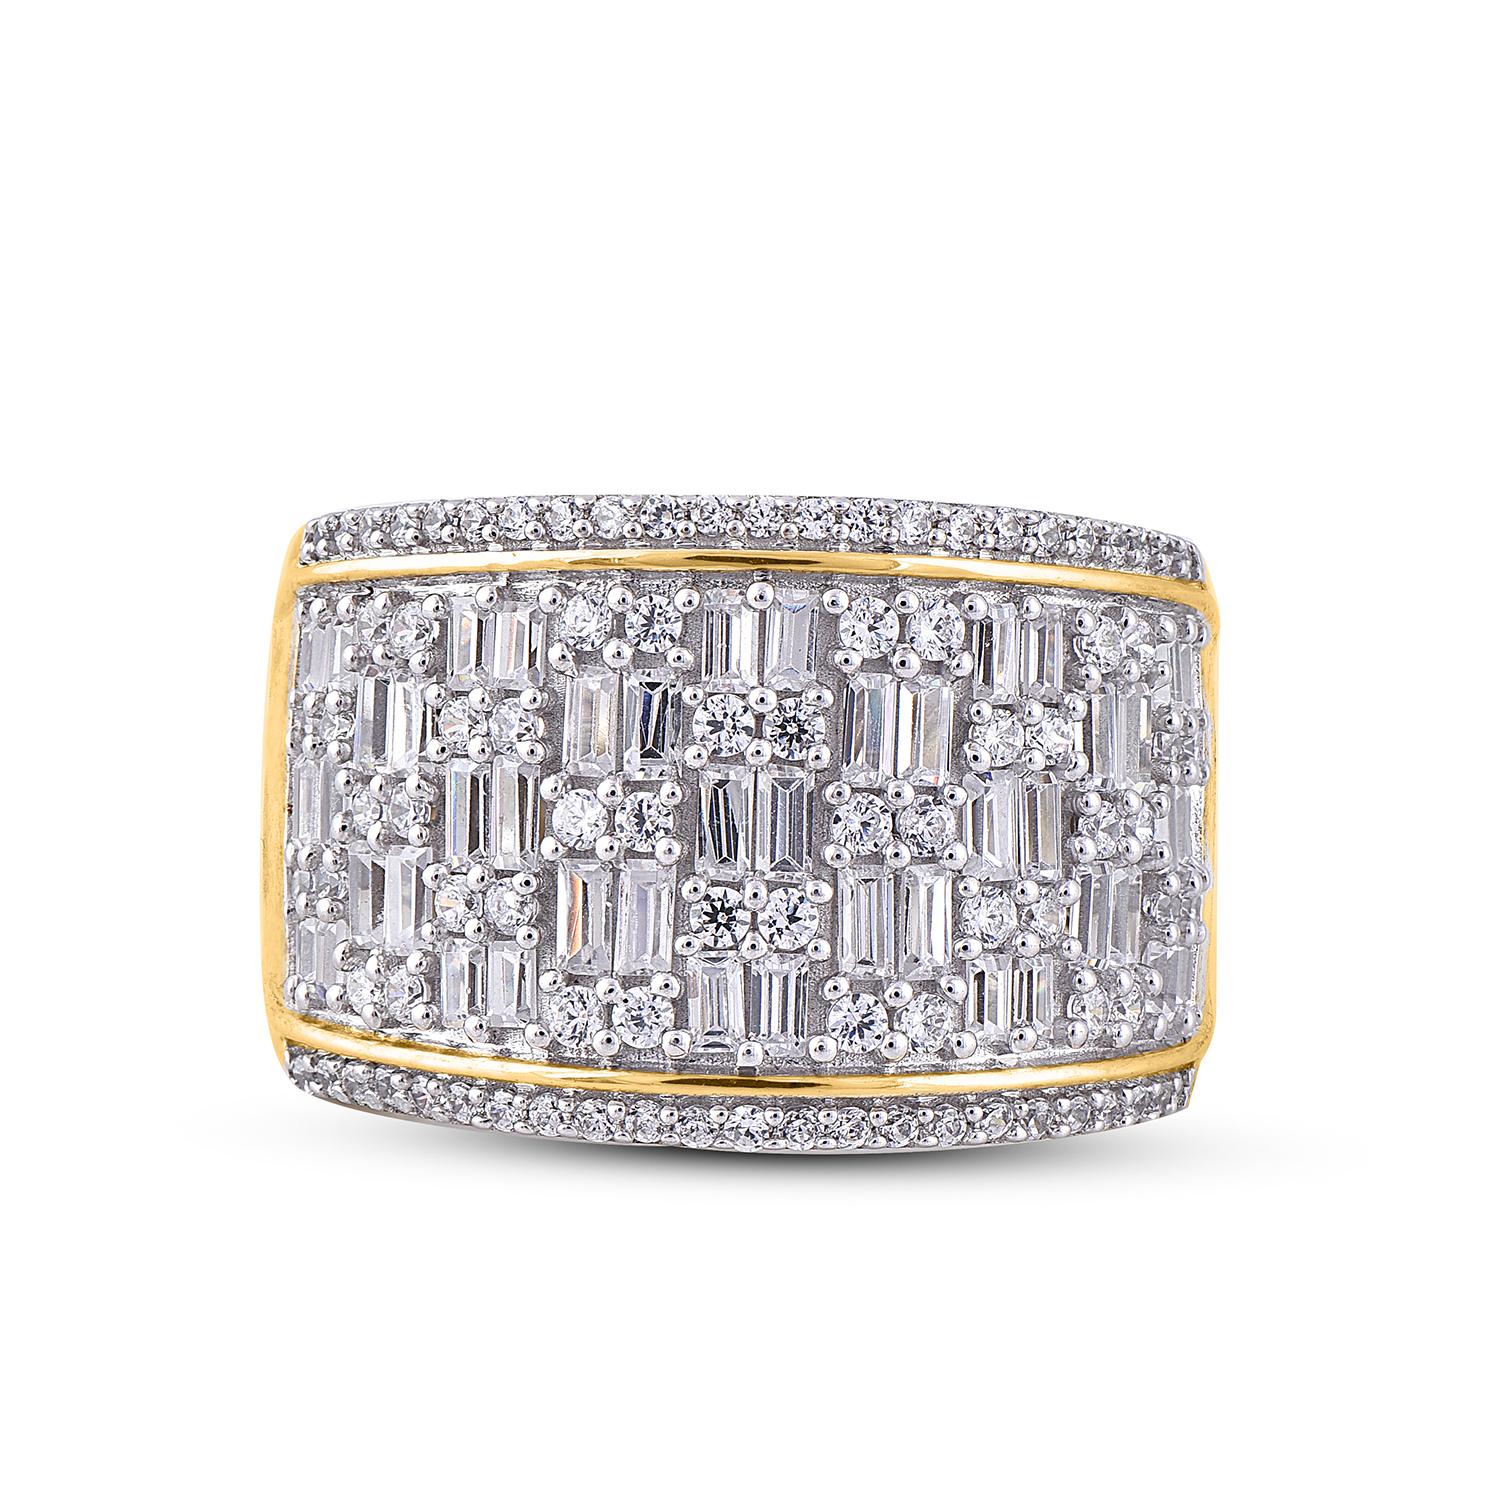 Dieses wahrhaft exquisite diamantene Verlobungsband wird wegen seiner klassischen Schönheit und Eleganz bewundert werden. Das Gesamtgewicht der Diamanten 1,50 Karat, Farbe H-I, Reinheit I2. Dieser Ring ist wunderschön aus 18 Karat Gelbgold gefertigt